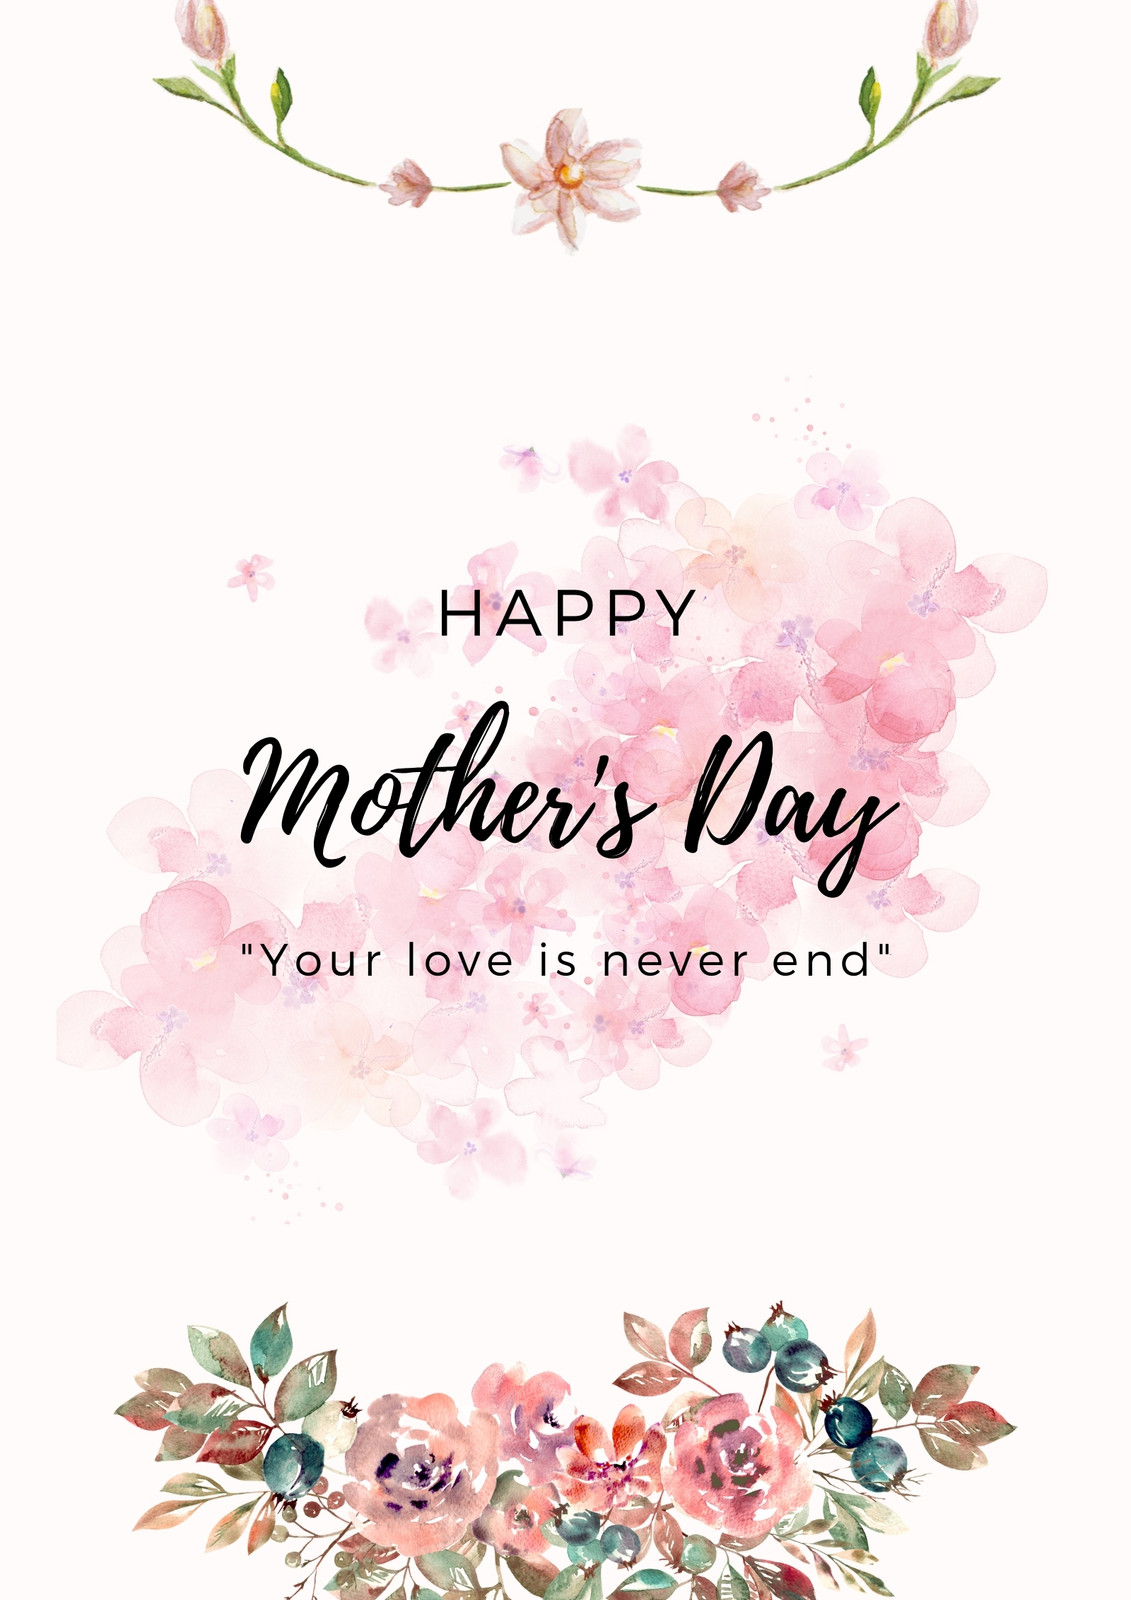 design-templates-paper-floral-spring-instagram-flyer-summer-mothers